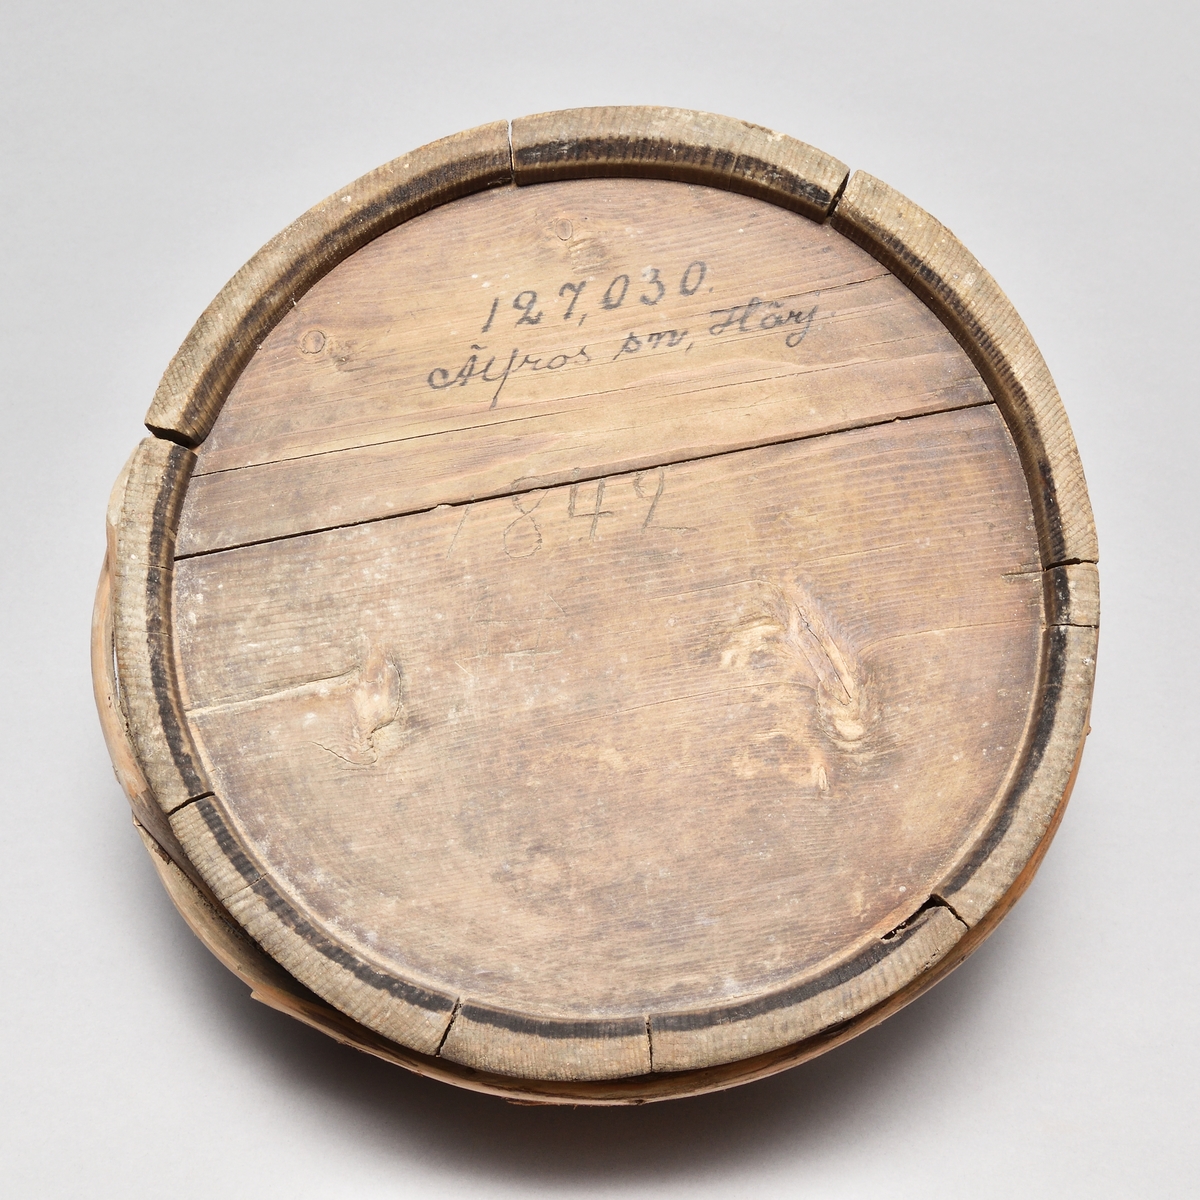 Laggad stäva av barrträ, spår av röd färg. Sju stavar, varav en förlängd till handtag, profilerad. Två trävidjor. Märkt "1842" samt ett bomärke.